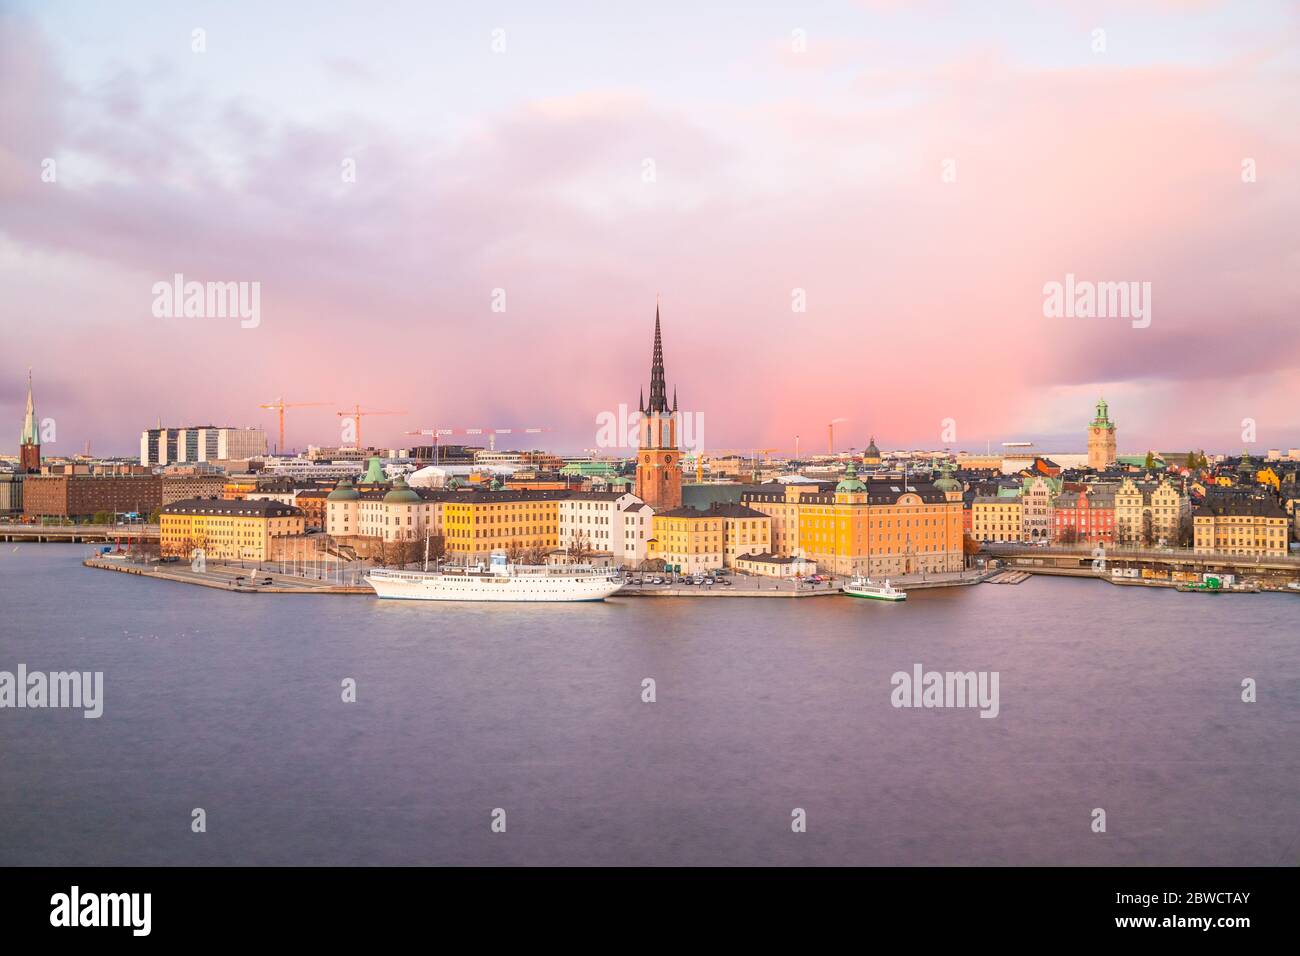 Vedute dello skyline di verso l'isola di Riddarholmen a Stoccolma. Preso durante il tramonto e mostrando un colorato sky, architettura e torri. Foto Stock